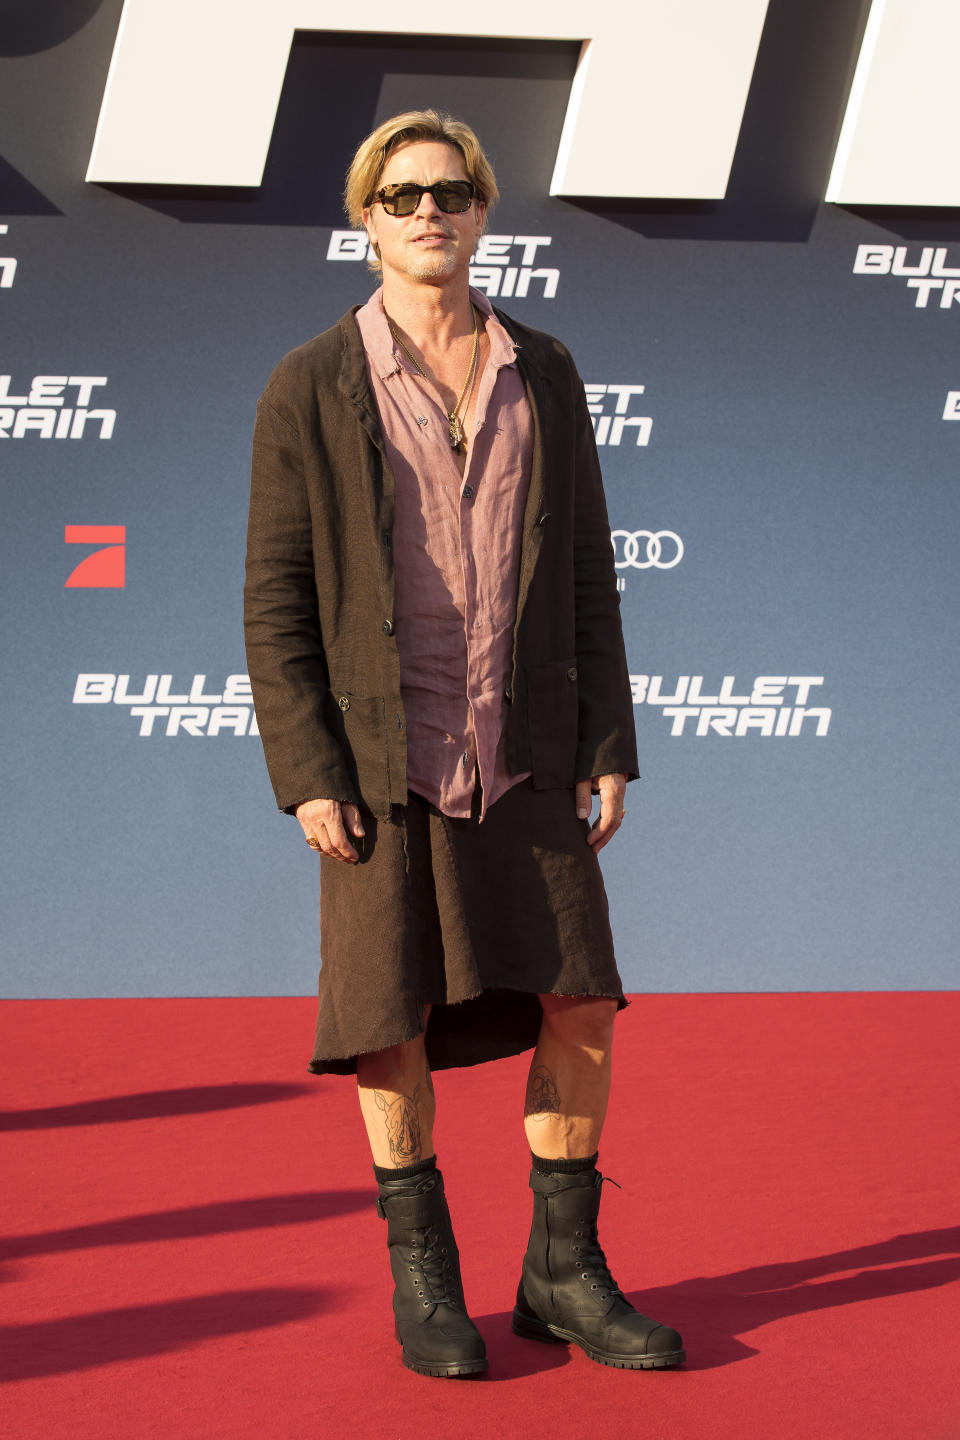 Brad Pitt wearing a skirt on the Bullet Train red carpet